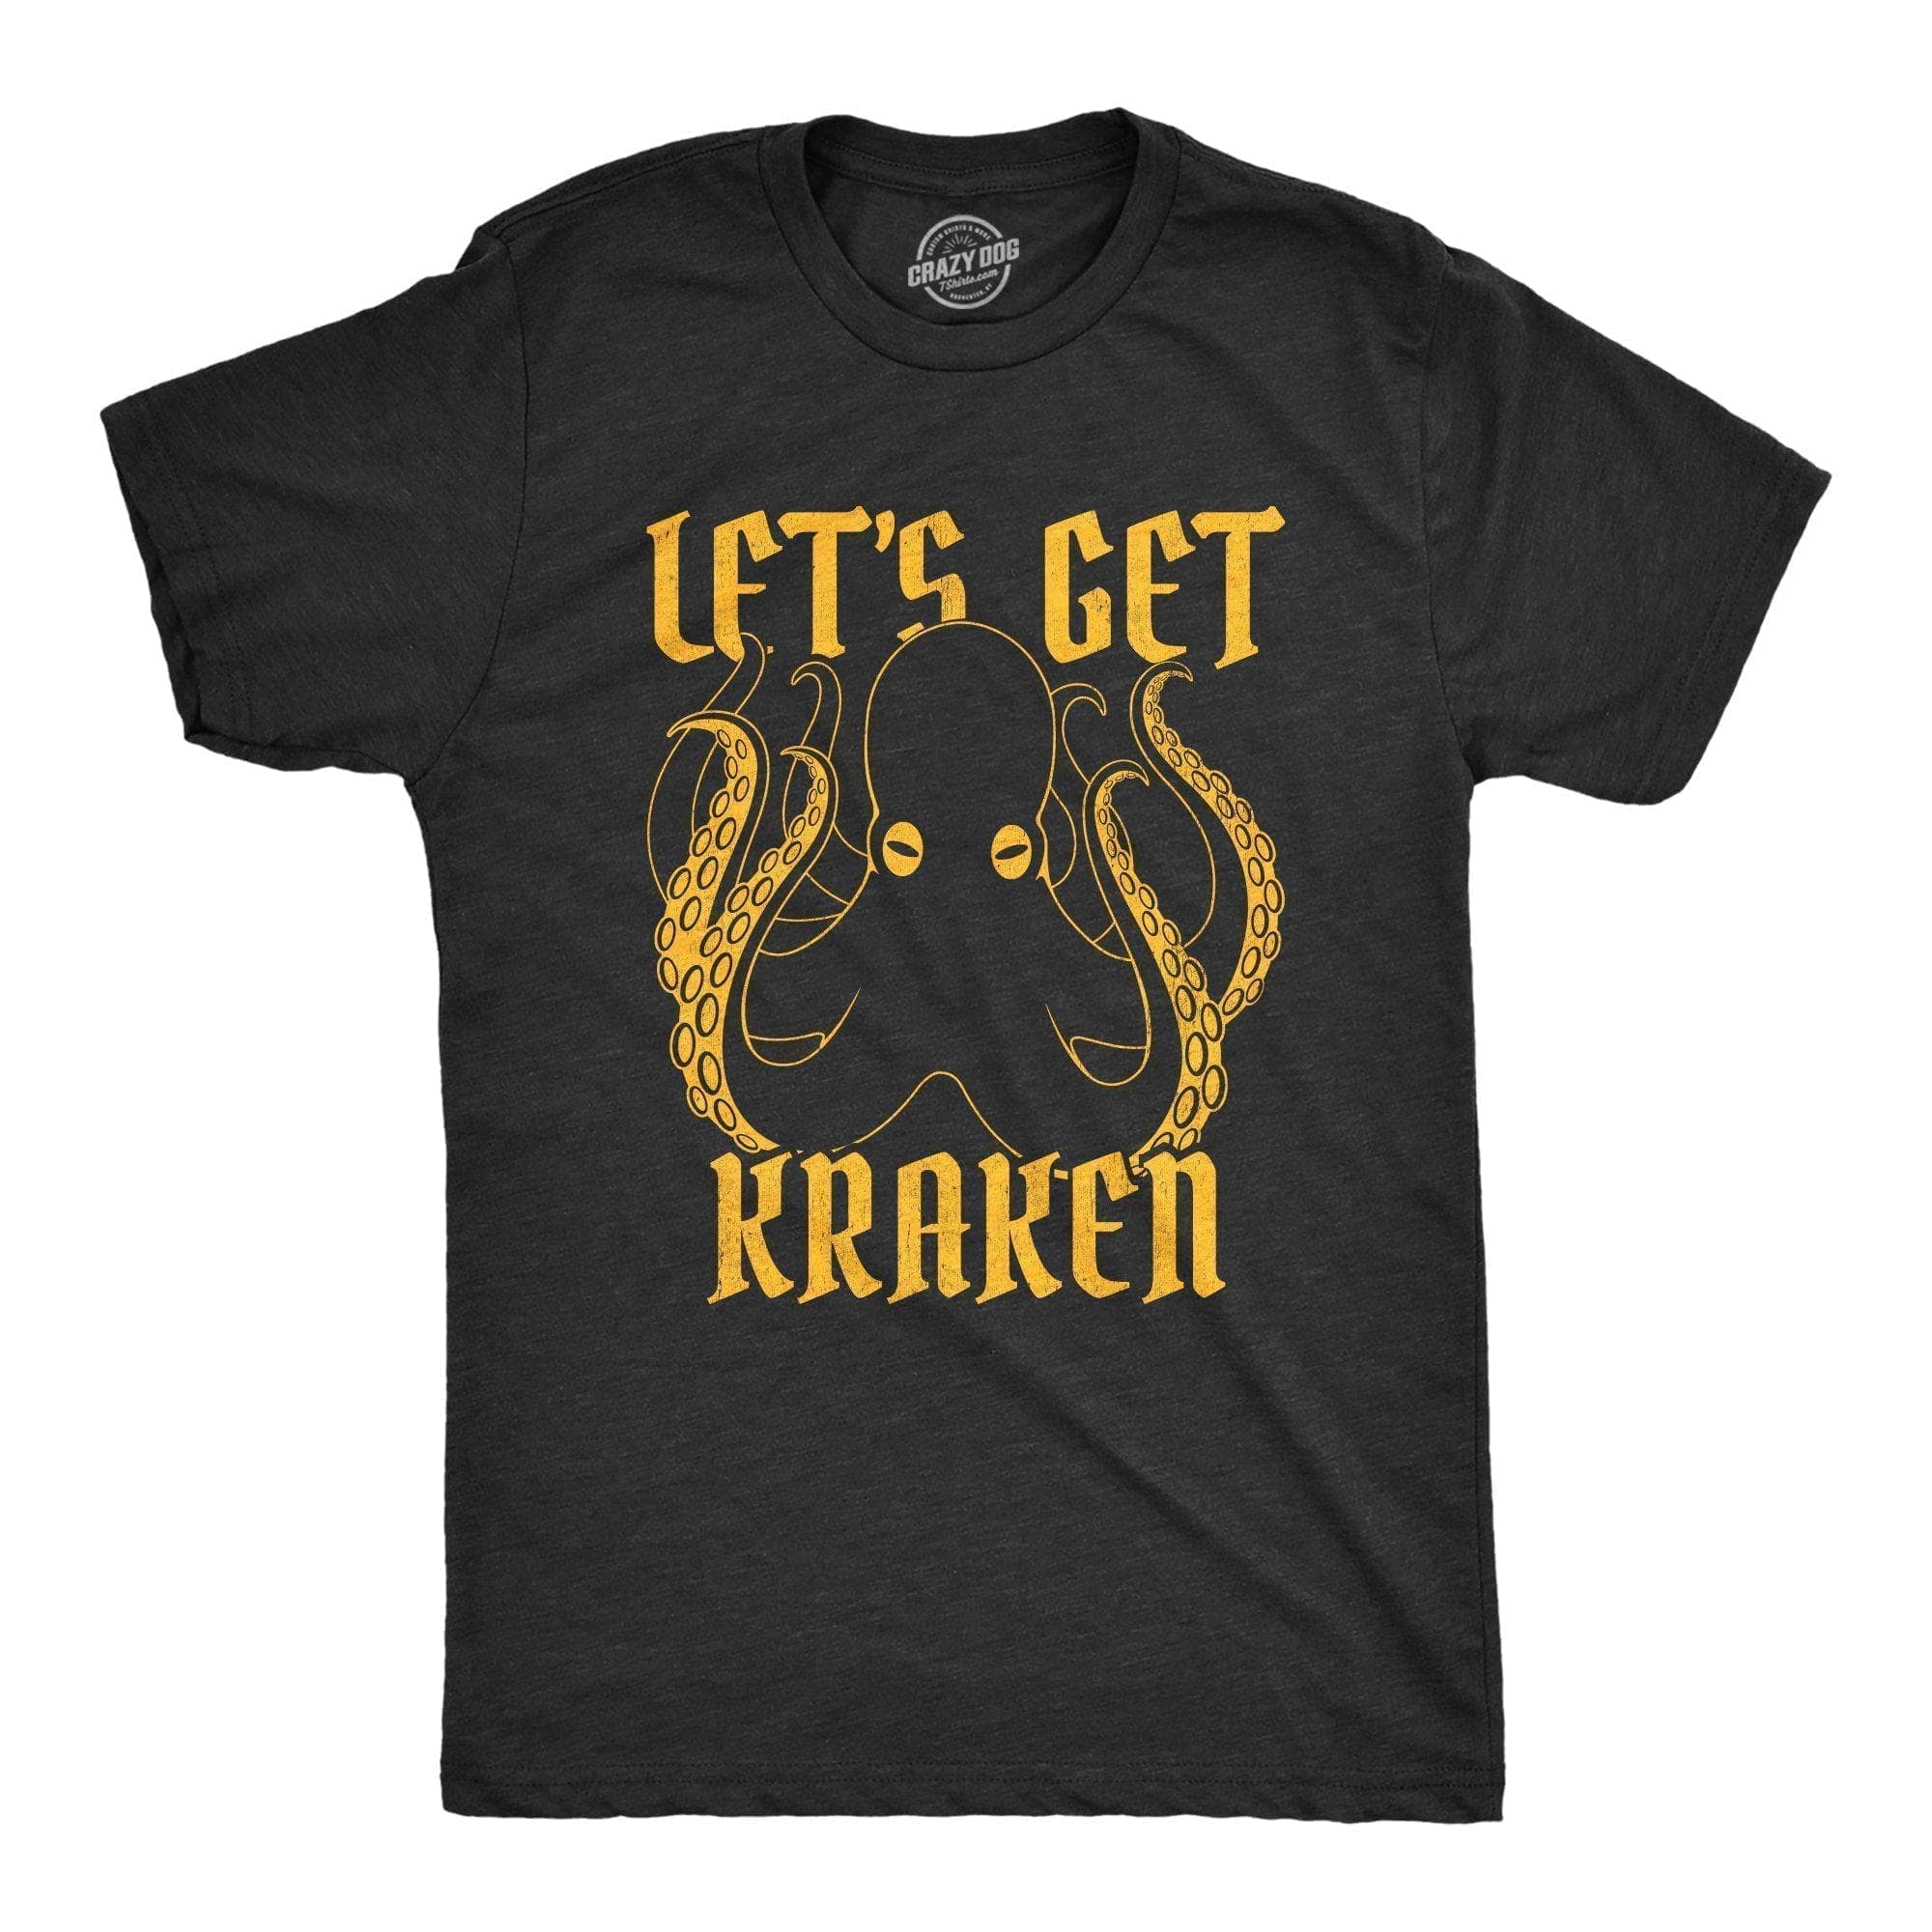 Let's Get Kraken Men's Tshirt - Crazy Dog T-Shirts